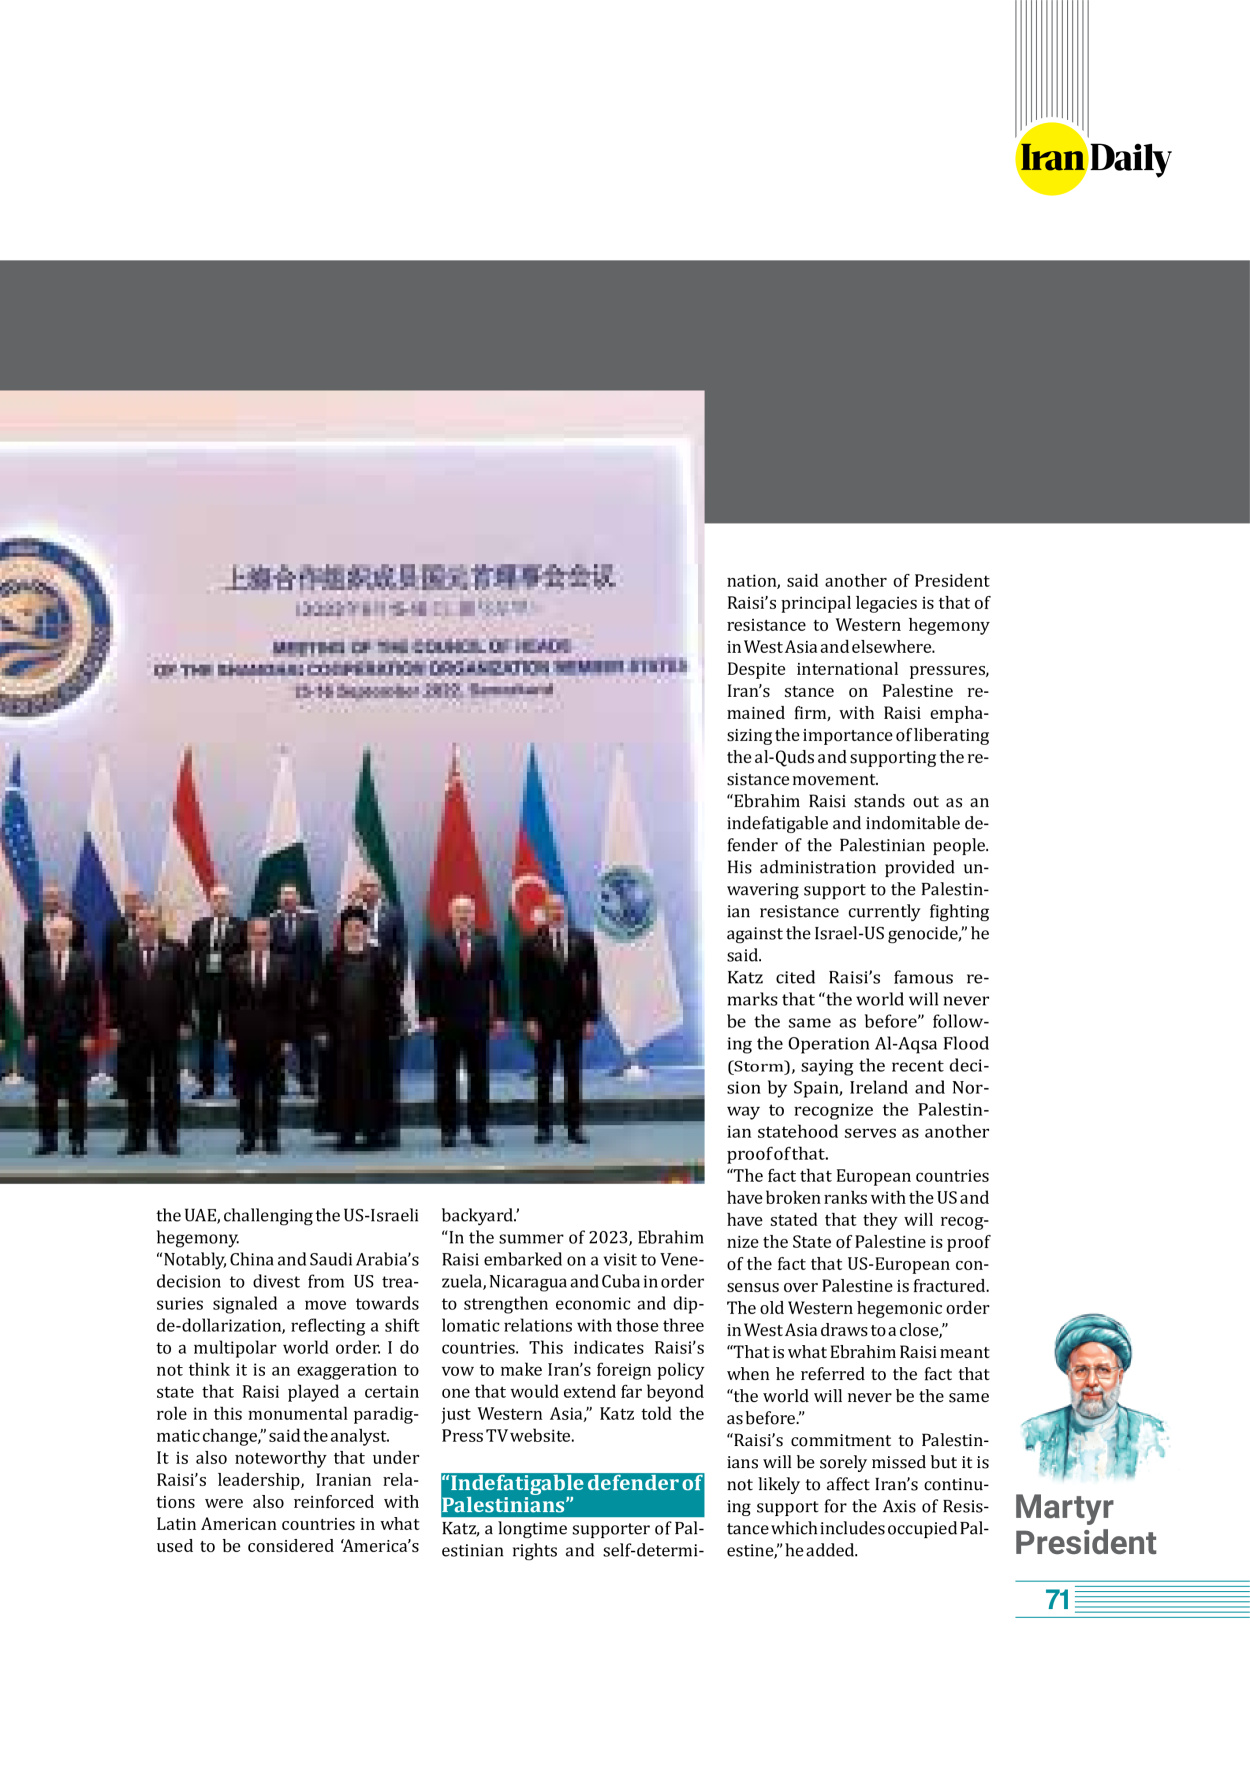 روزنامه ایران - ویژه نامه وِزه نامه چهلم شهید رییسی( انگلیسی) - ۱۷ تیر ۱۴۰۳ - صفحه ۷۱